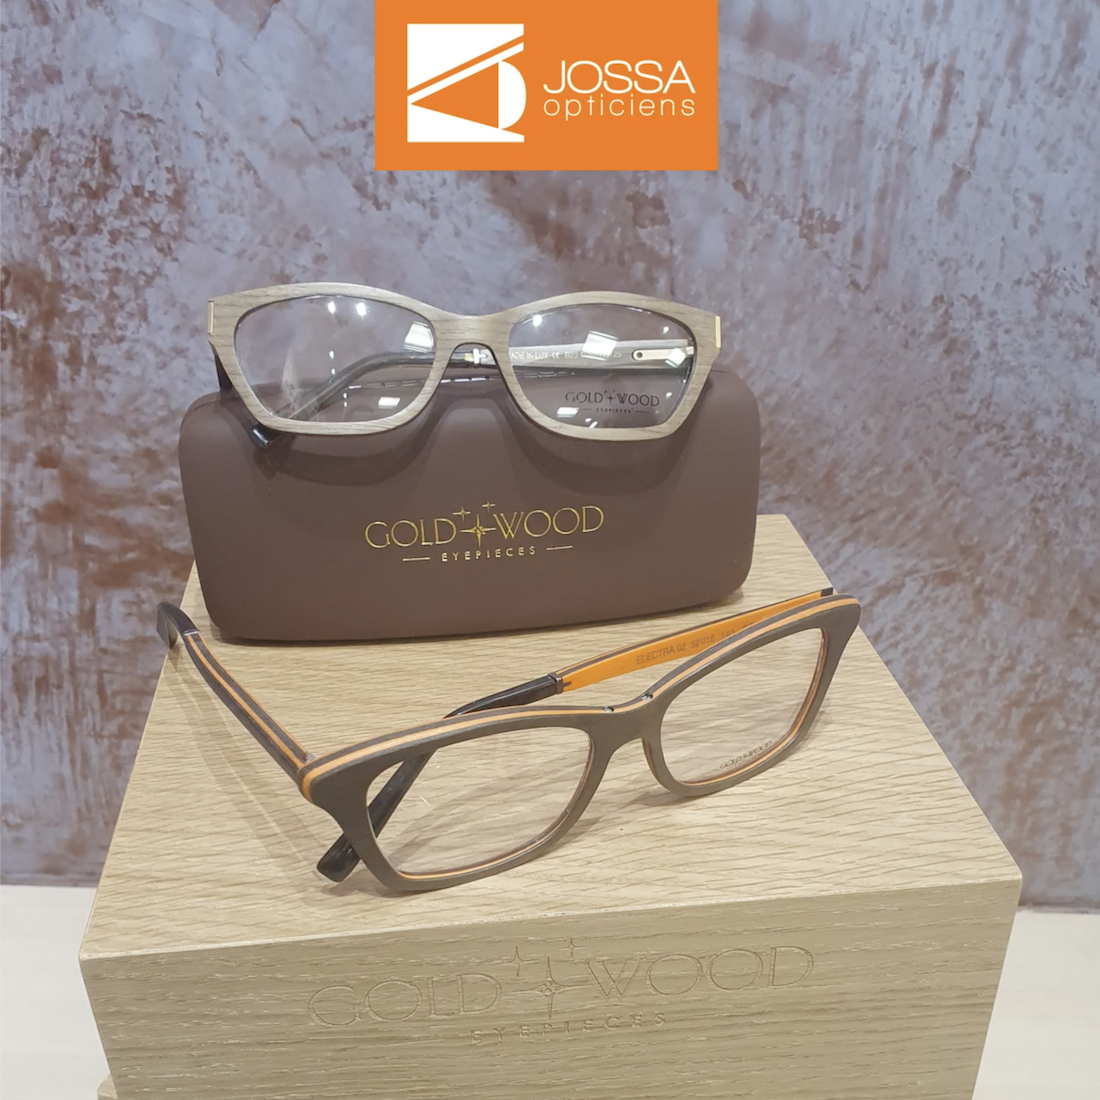 Les lunettes d’exception Gold Wood à découvrir chez votre opticien Jossa.